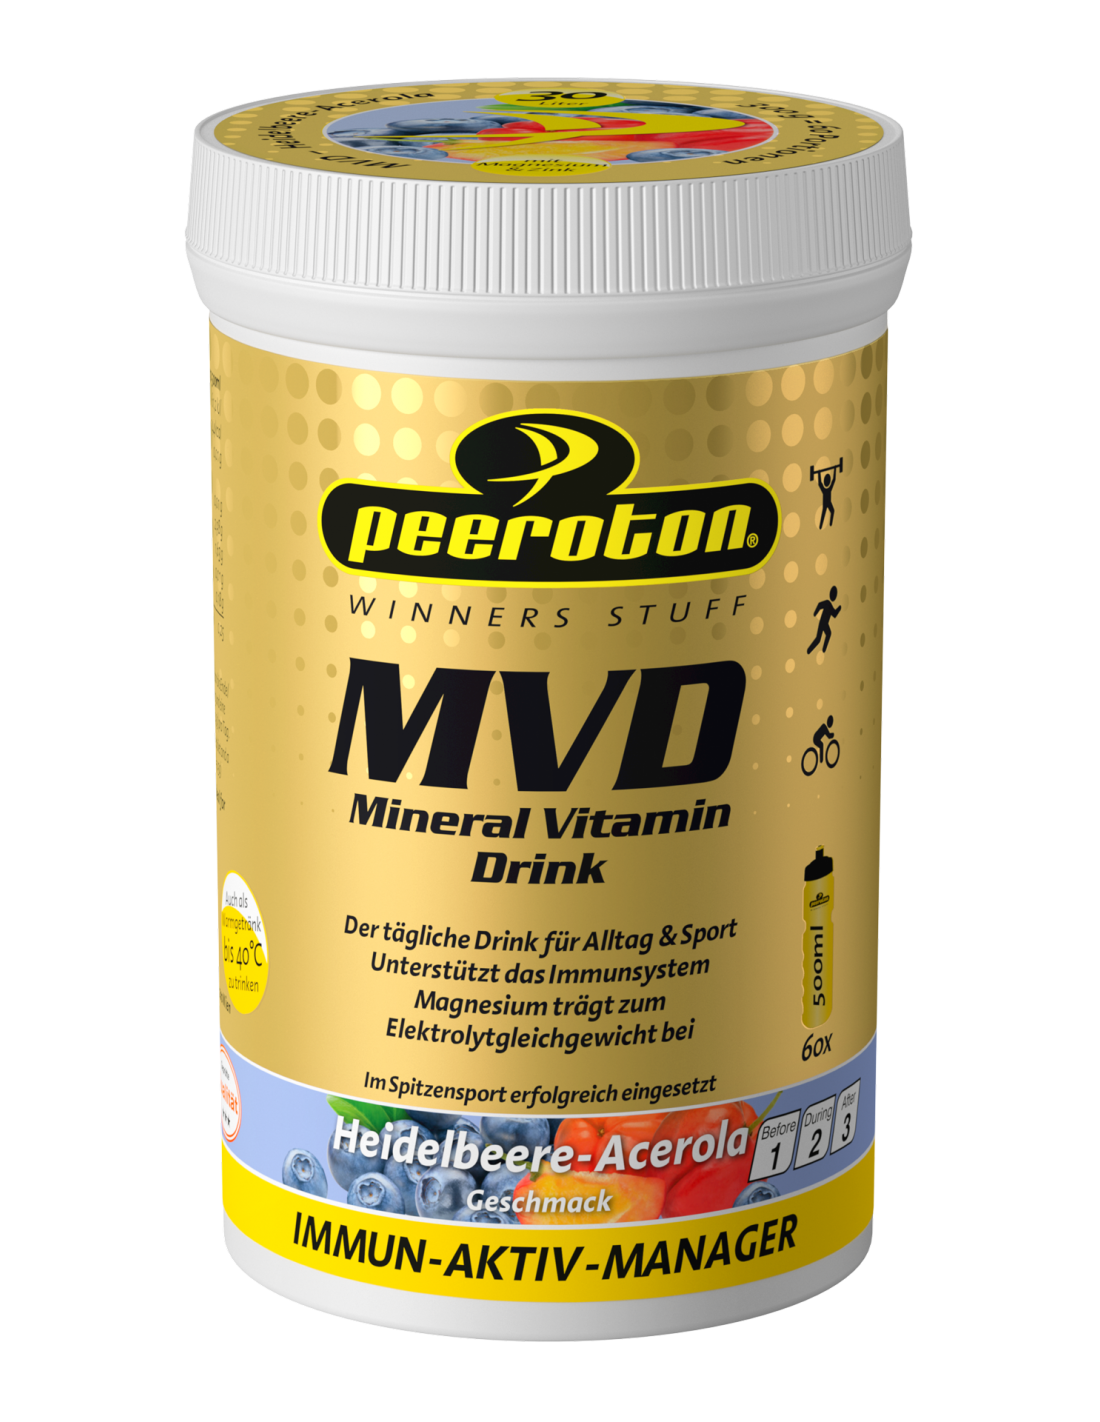 PEEROTON MVD Mineral Vitamin Drink, Heidelbeere Acerola, 300g Anwendung - Gesundheit/Wellness, Konsistenz - Pulver, Einnahmeempfehlung - bei Bedarf/Mahlzeiten, Geschmack - Heidelbeere, von Peeroton